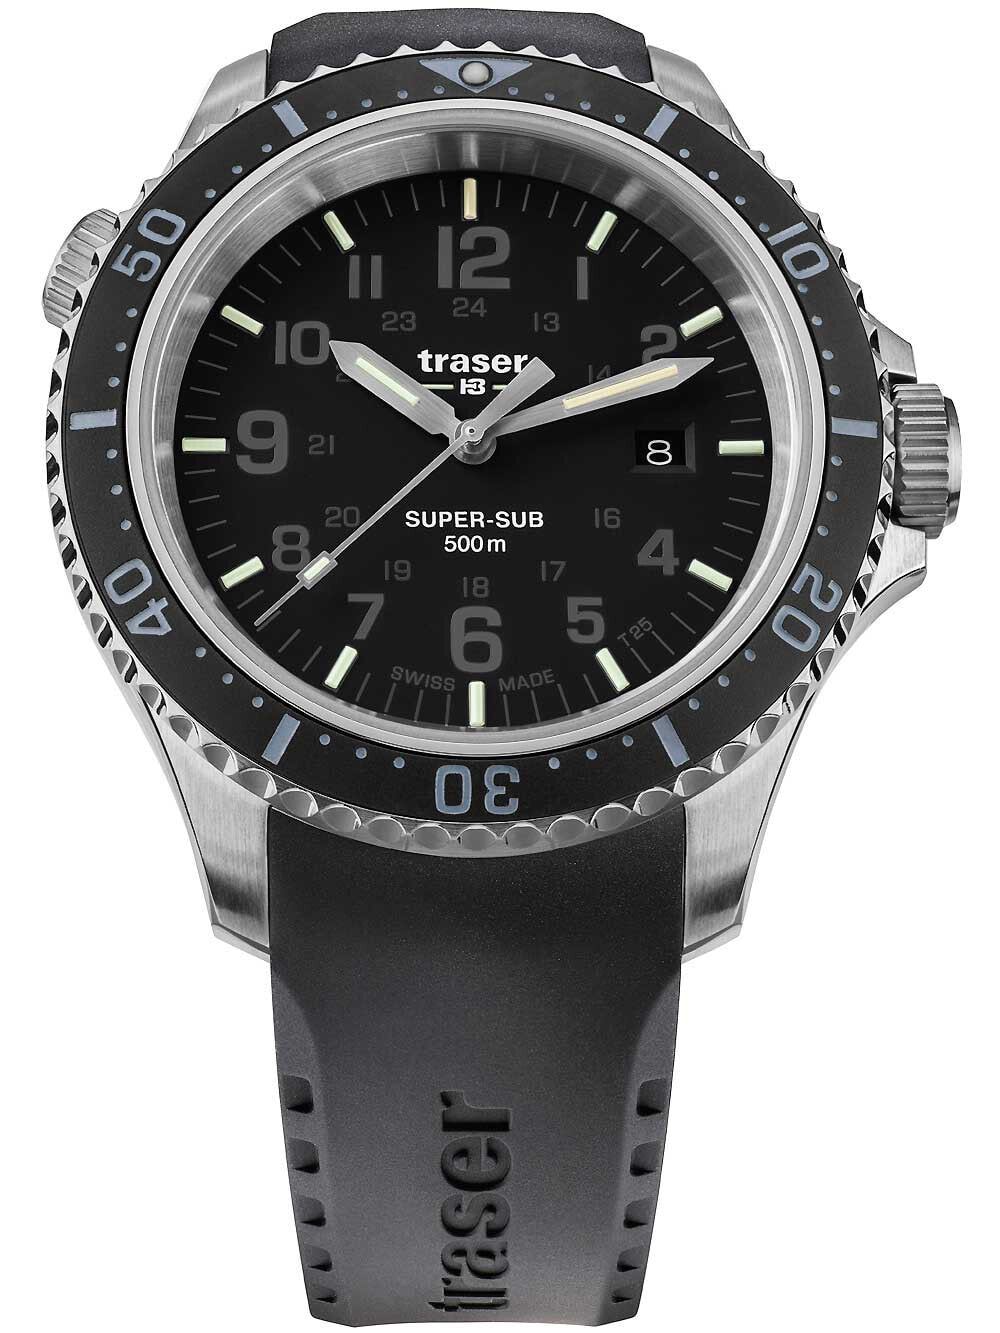 Мужские наручные часы с черным силиконовым ремешком Traser H3 109377 P67 T25 SuperSub black 46 mm diver 50ATM